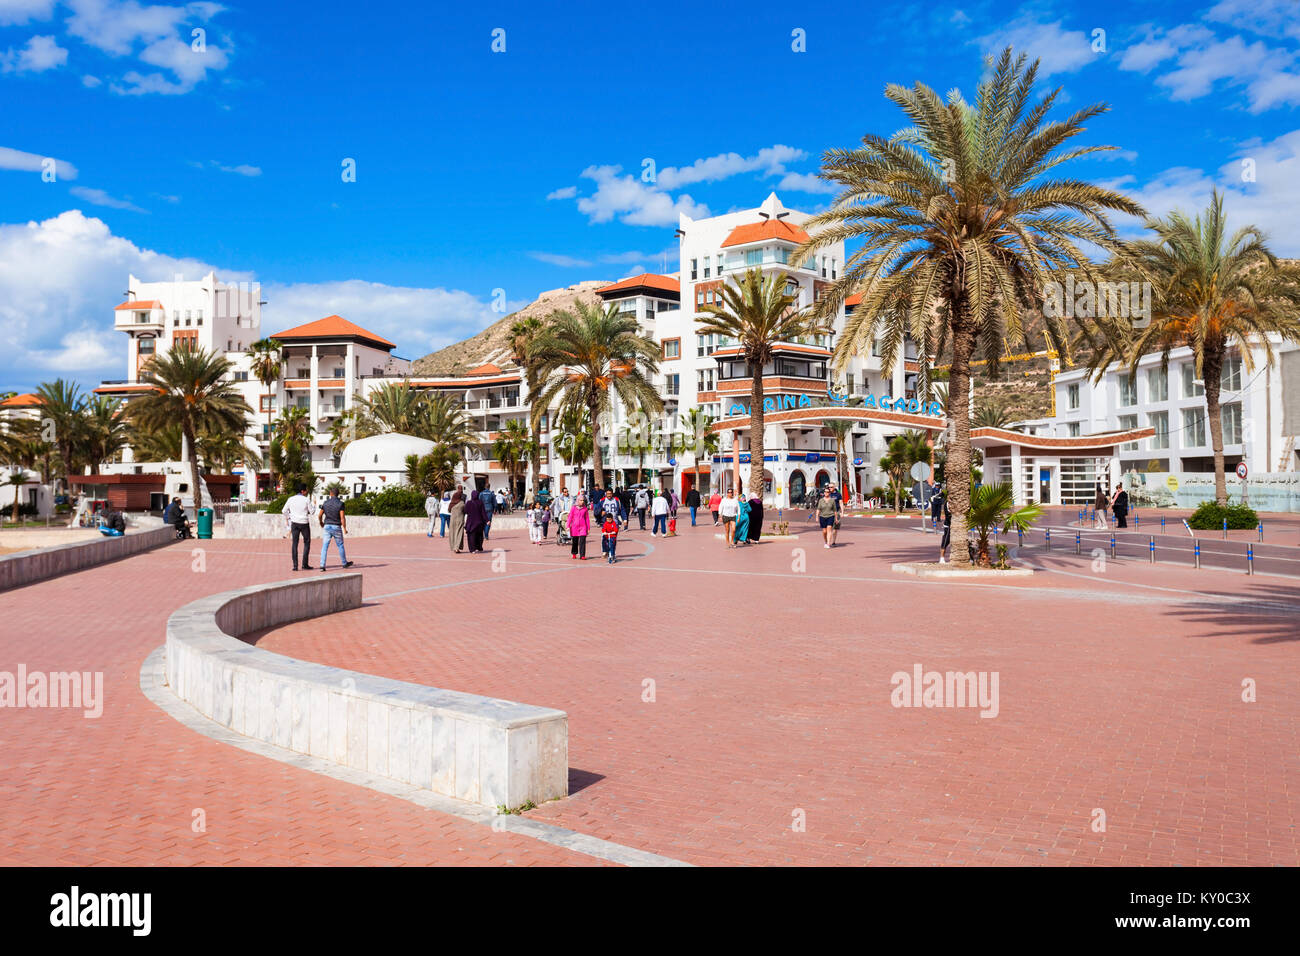 AGADIR MOROCCO FEBRUARY 21 2016 Agadir seafront promenade in Morocco. Agadir is a major